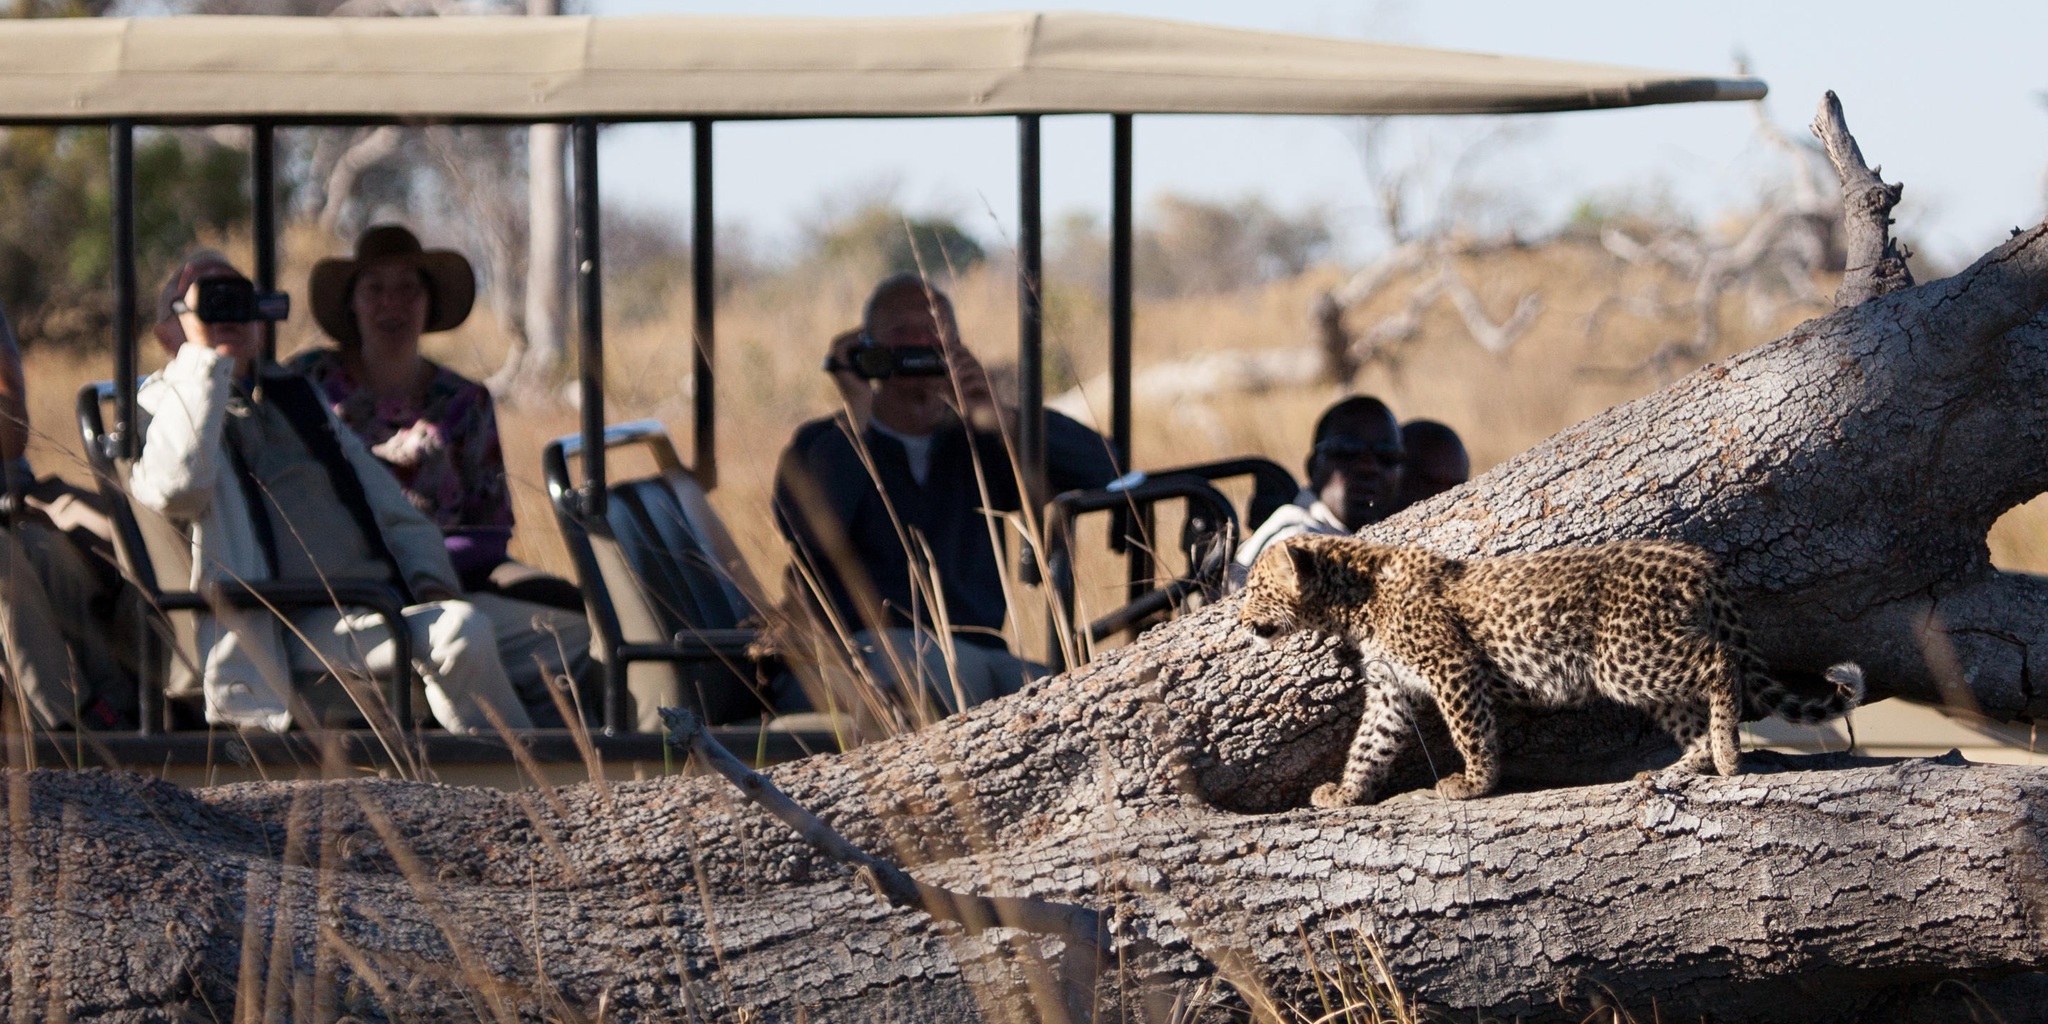 Leopard cub, Pom Pom, Okavango Delta, Botswana